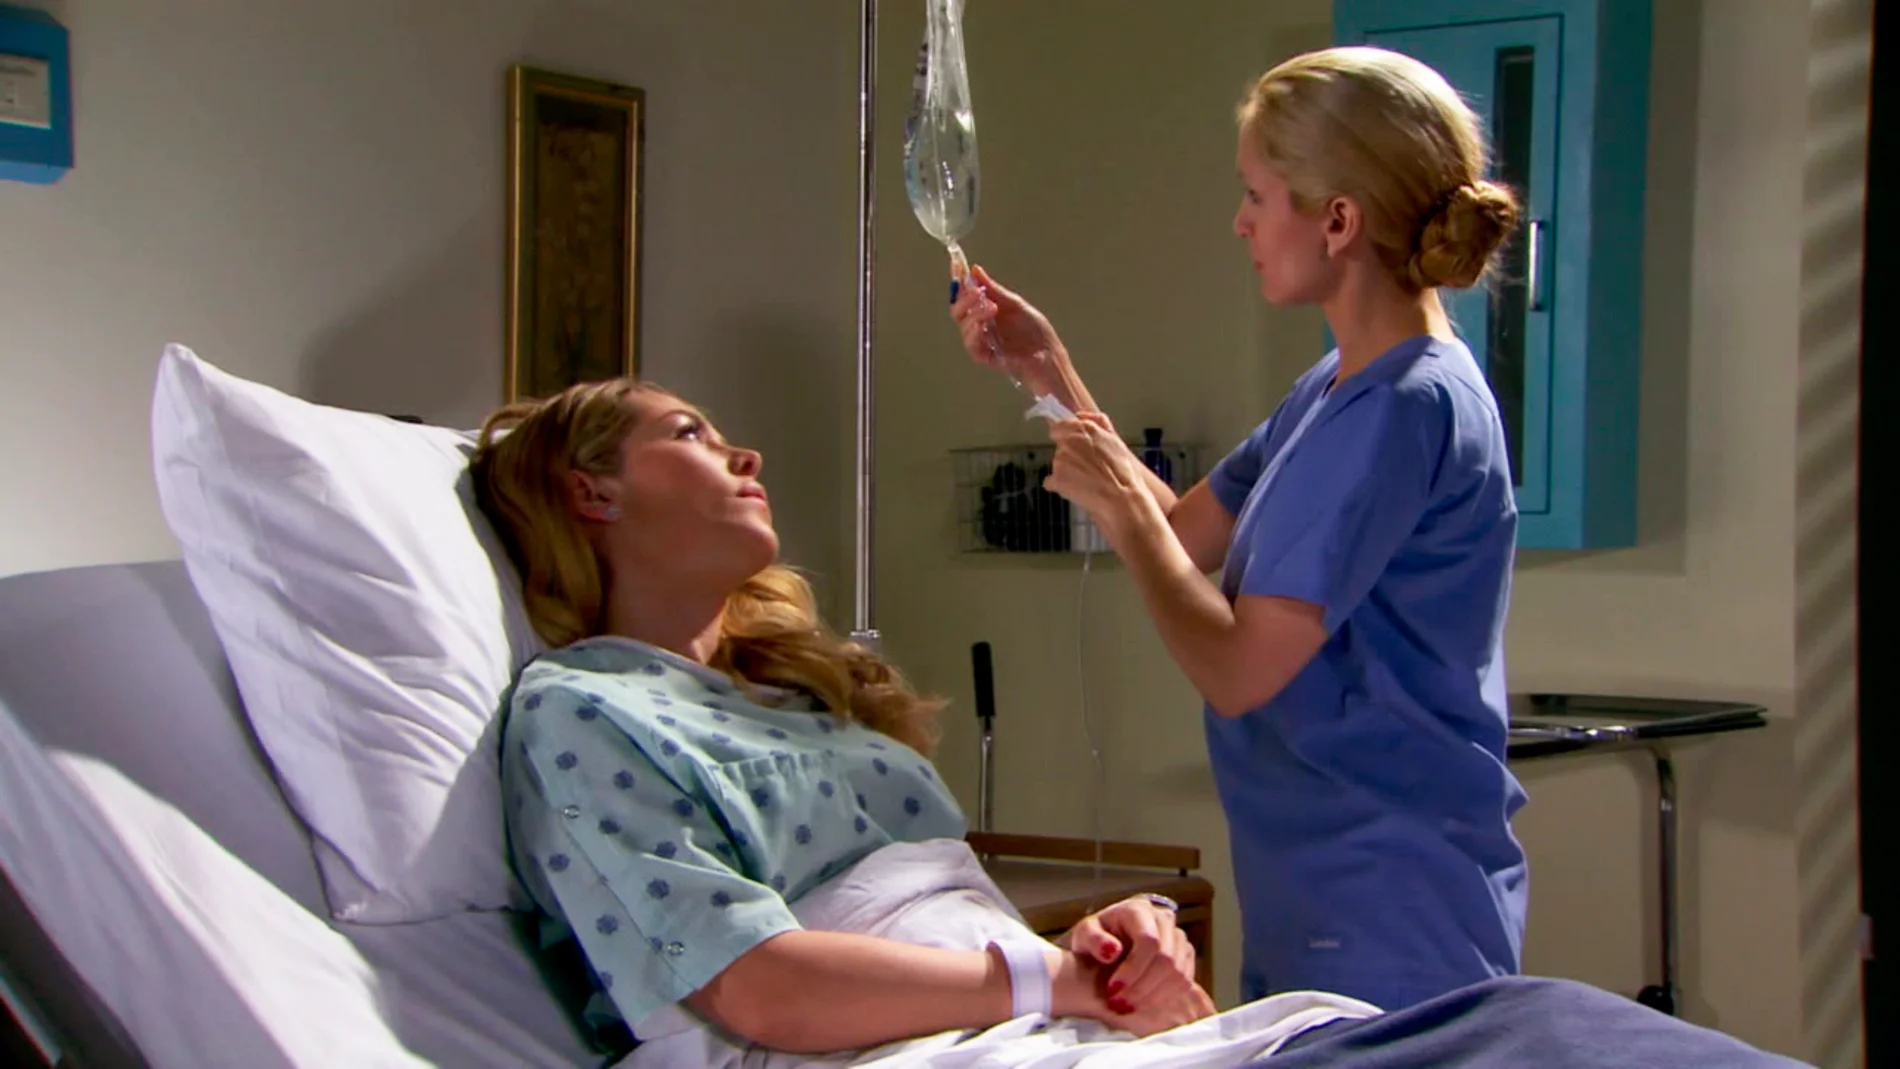 Felicia ordena a la enfermera que no le comunique a Willy que está embarazada